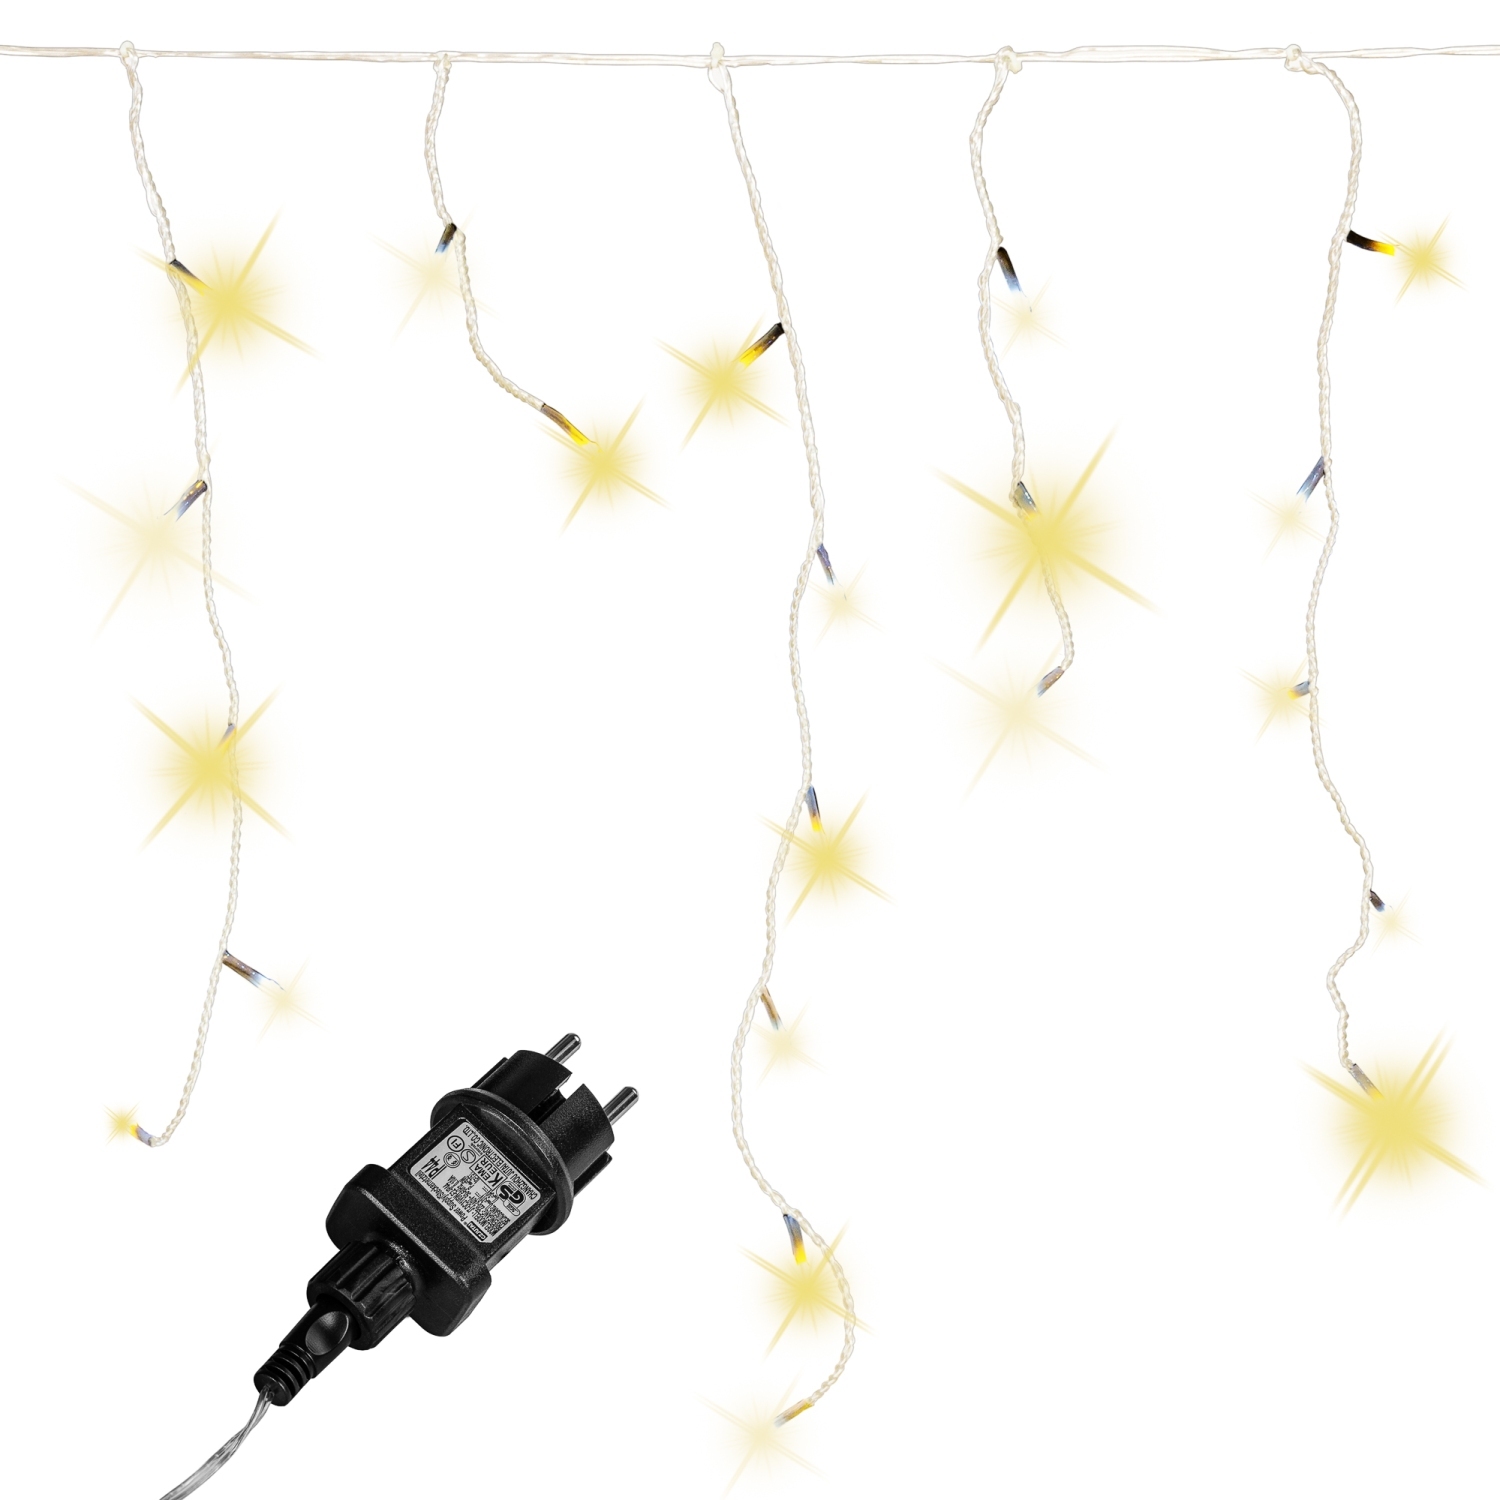 Lichtgordijn – Ijspegelverlichting – Voor Binnen en Buiten – Met afstandsbediening – 5 m – Warm wit